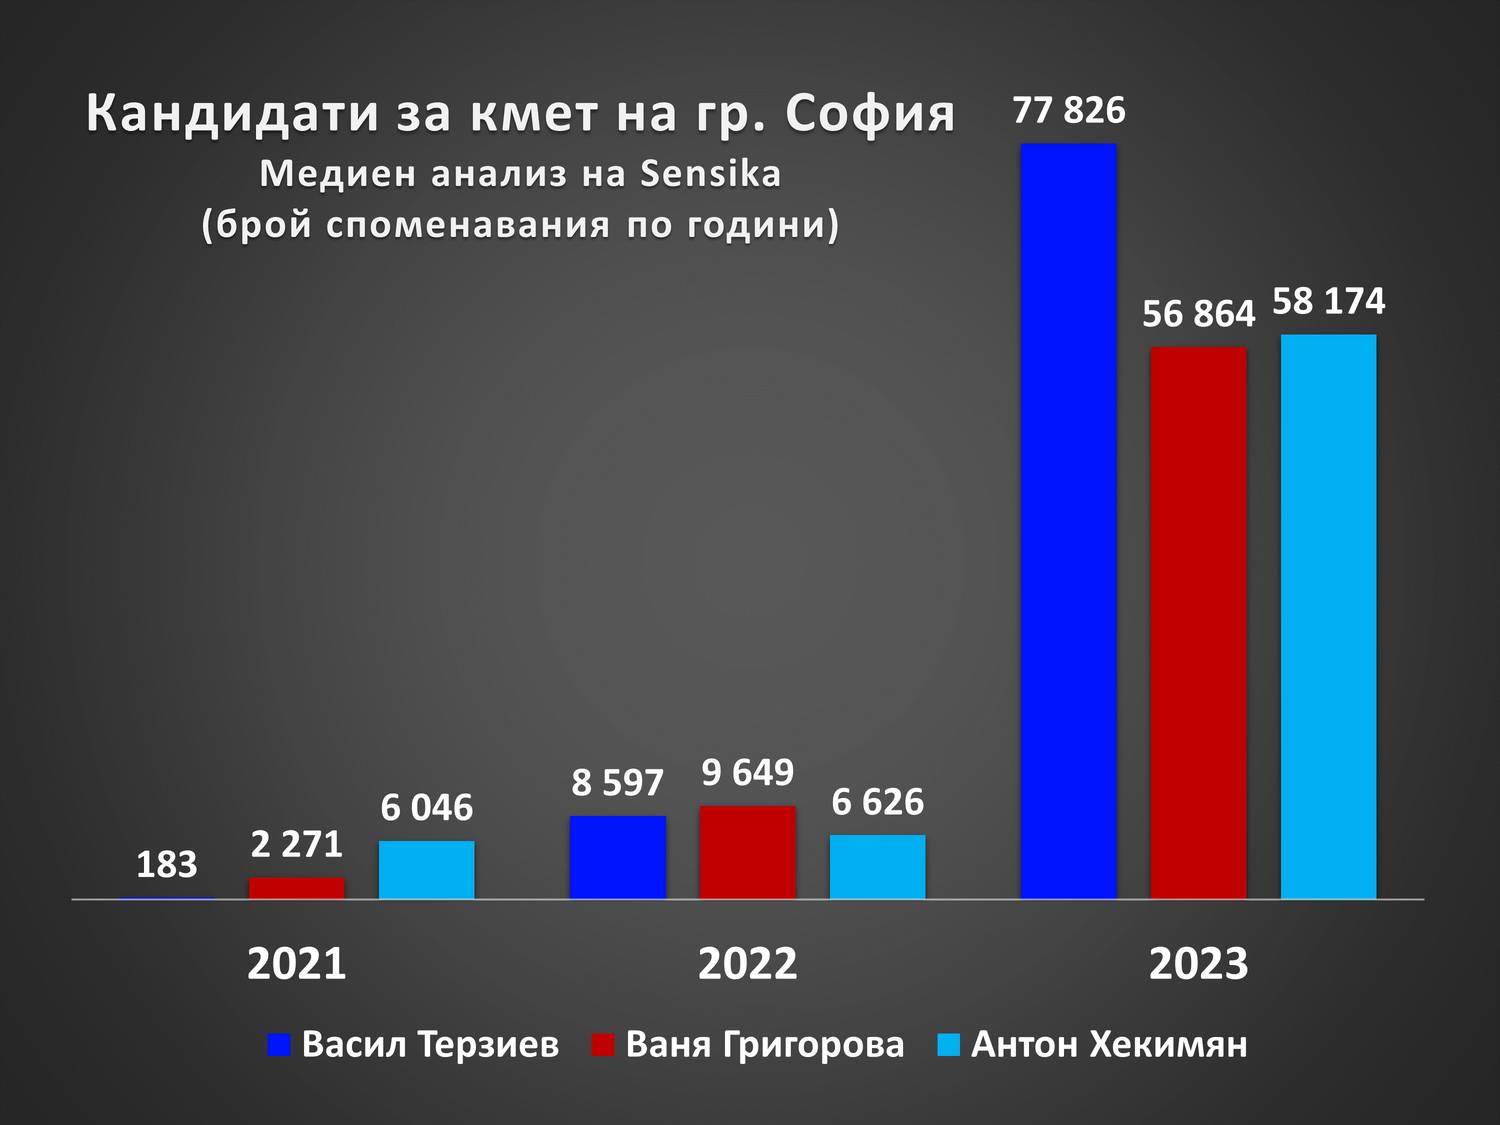 Графиката показва споменаването в медиите на кандидатите за кмет на София на изборите през 2023 г. Направено е сравнение с предходните 2021-ва и 2022-ра.